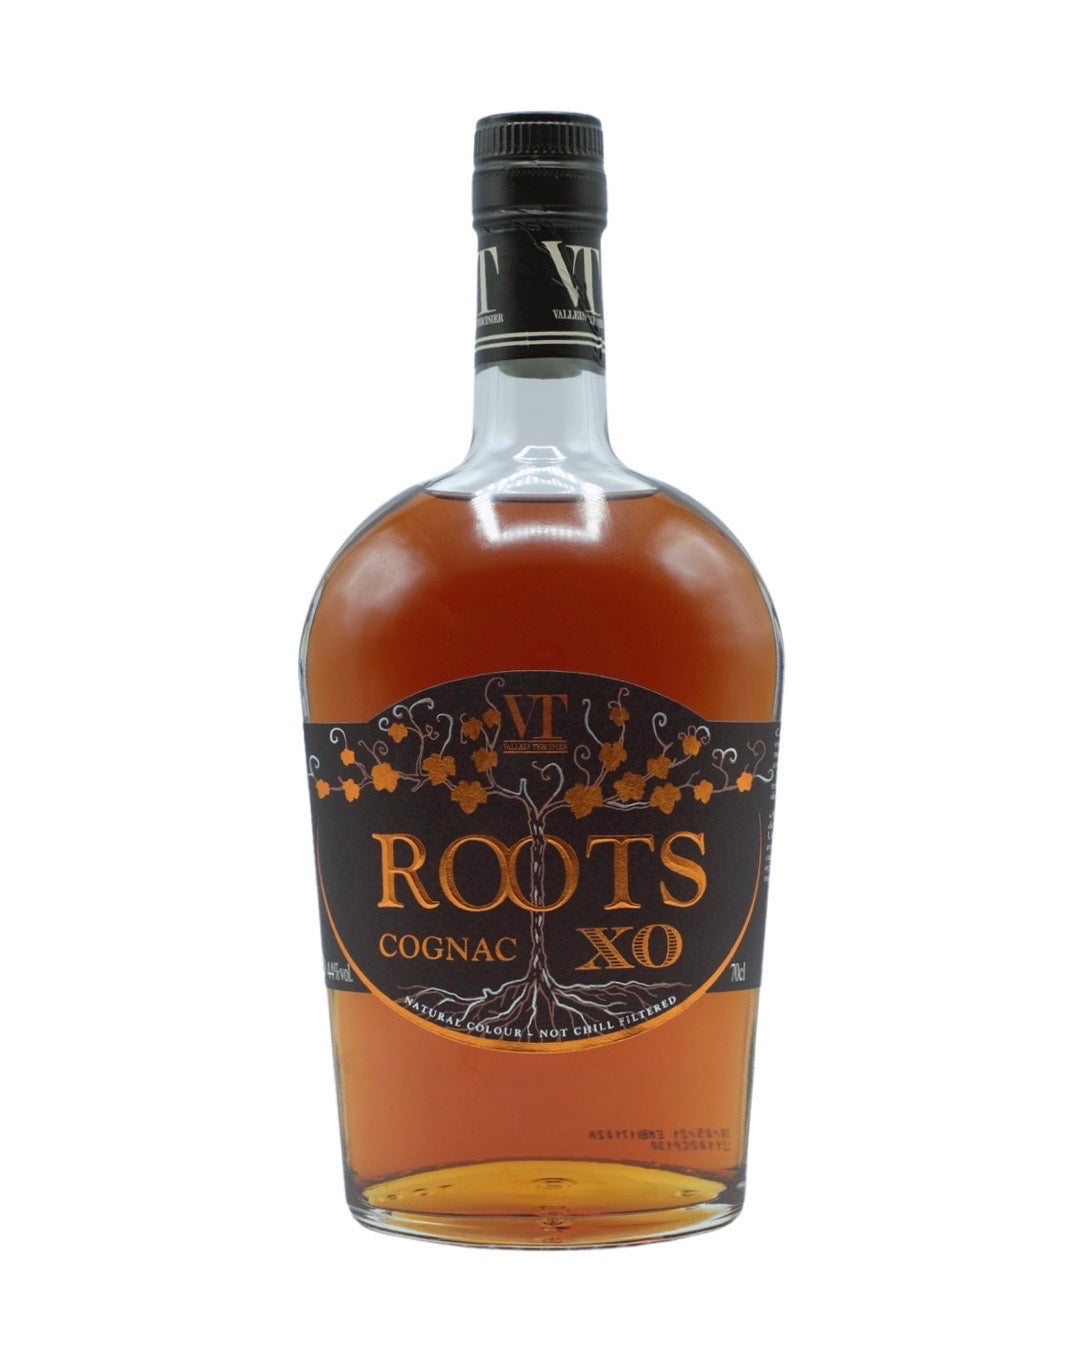 Vallein Tercinier Cognac XO Roots